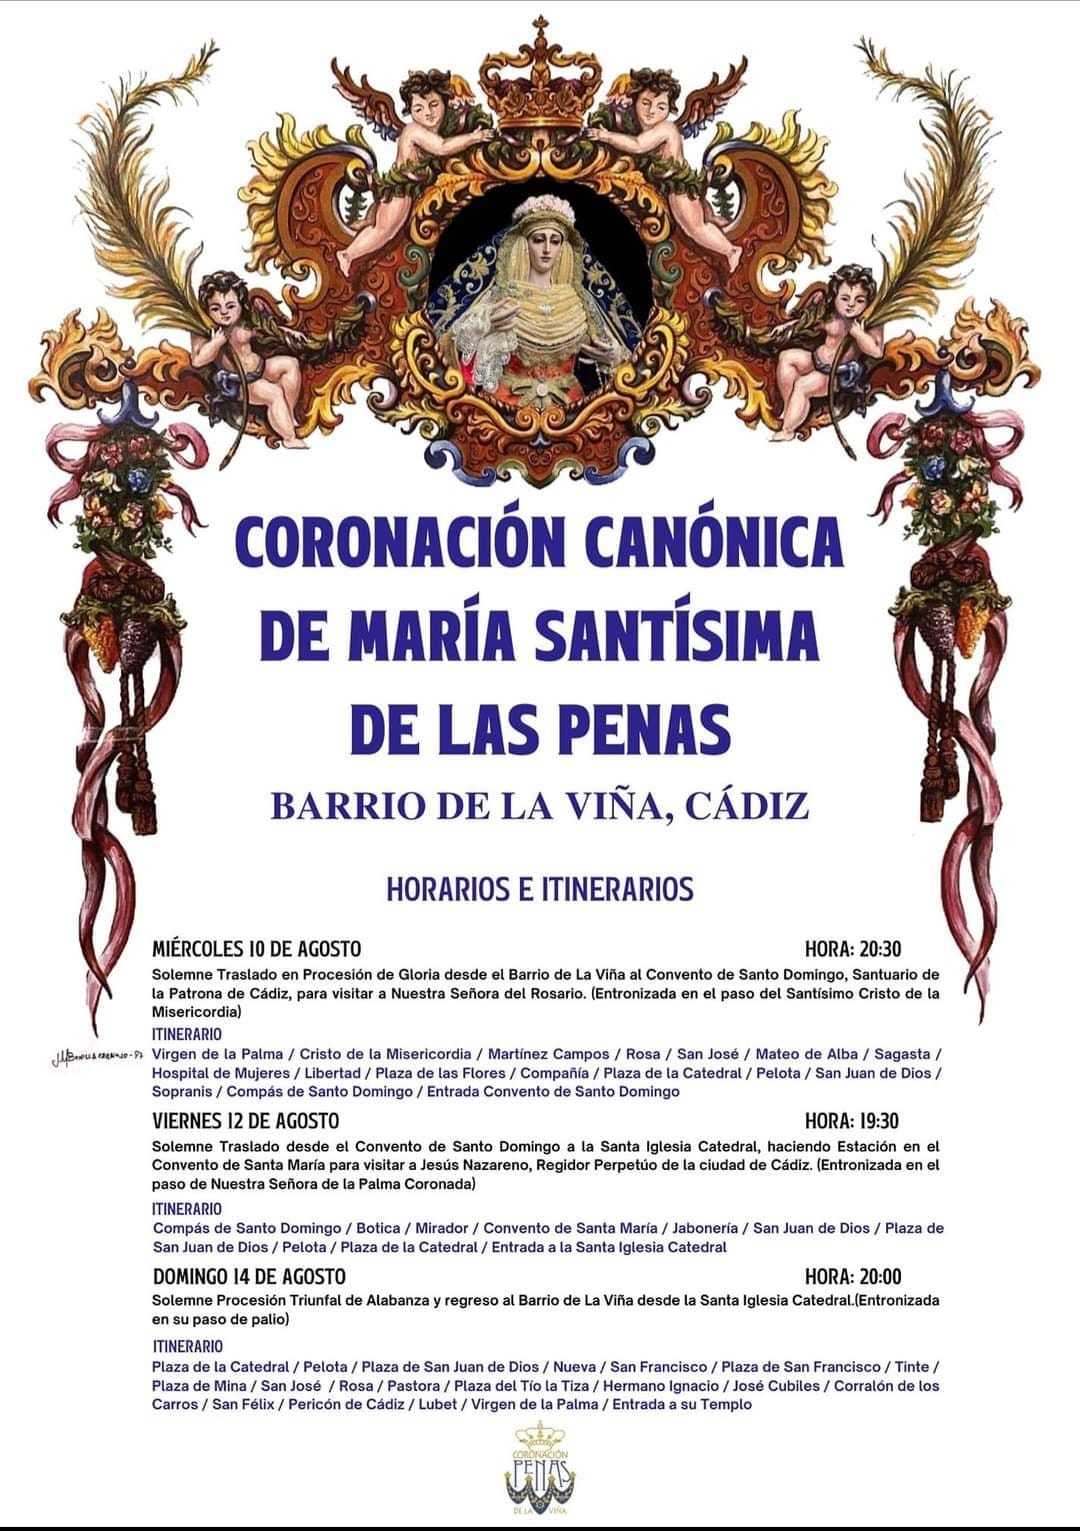 Se Oficializan los Horarios e Itinerarios de todas las Procesiones por motivo de la Coronación Canónica de la virgen de las Penas de Cádiz